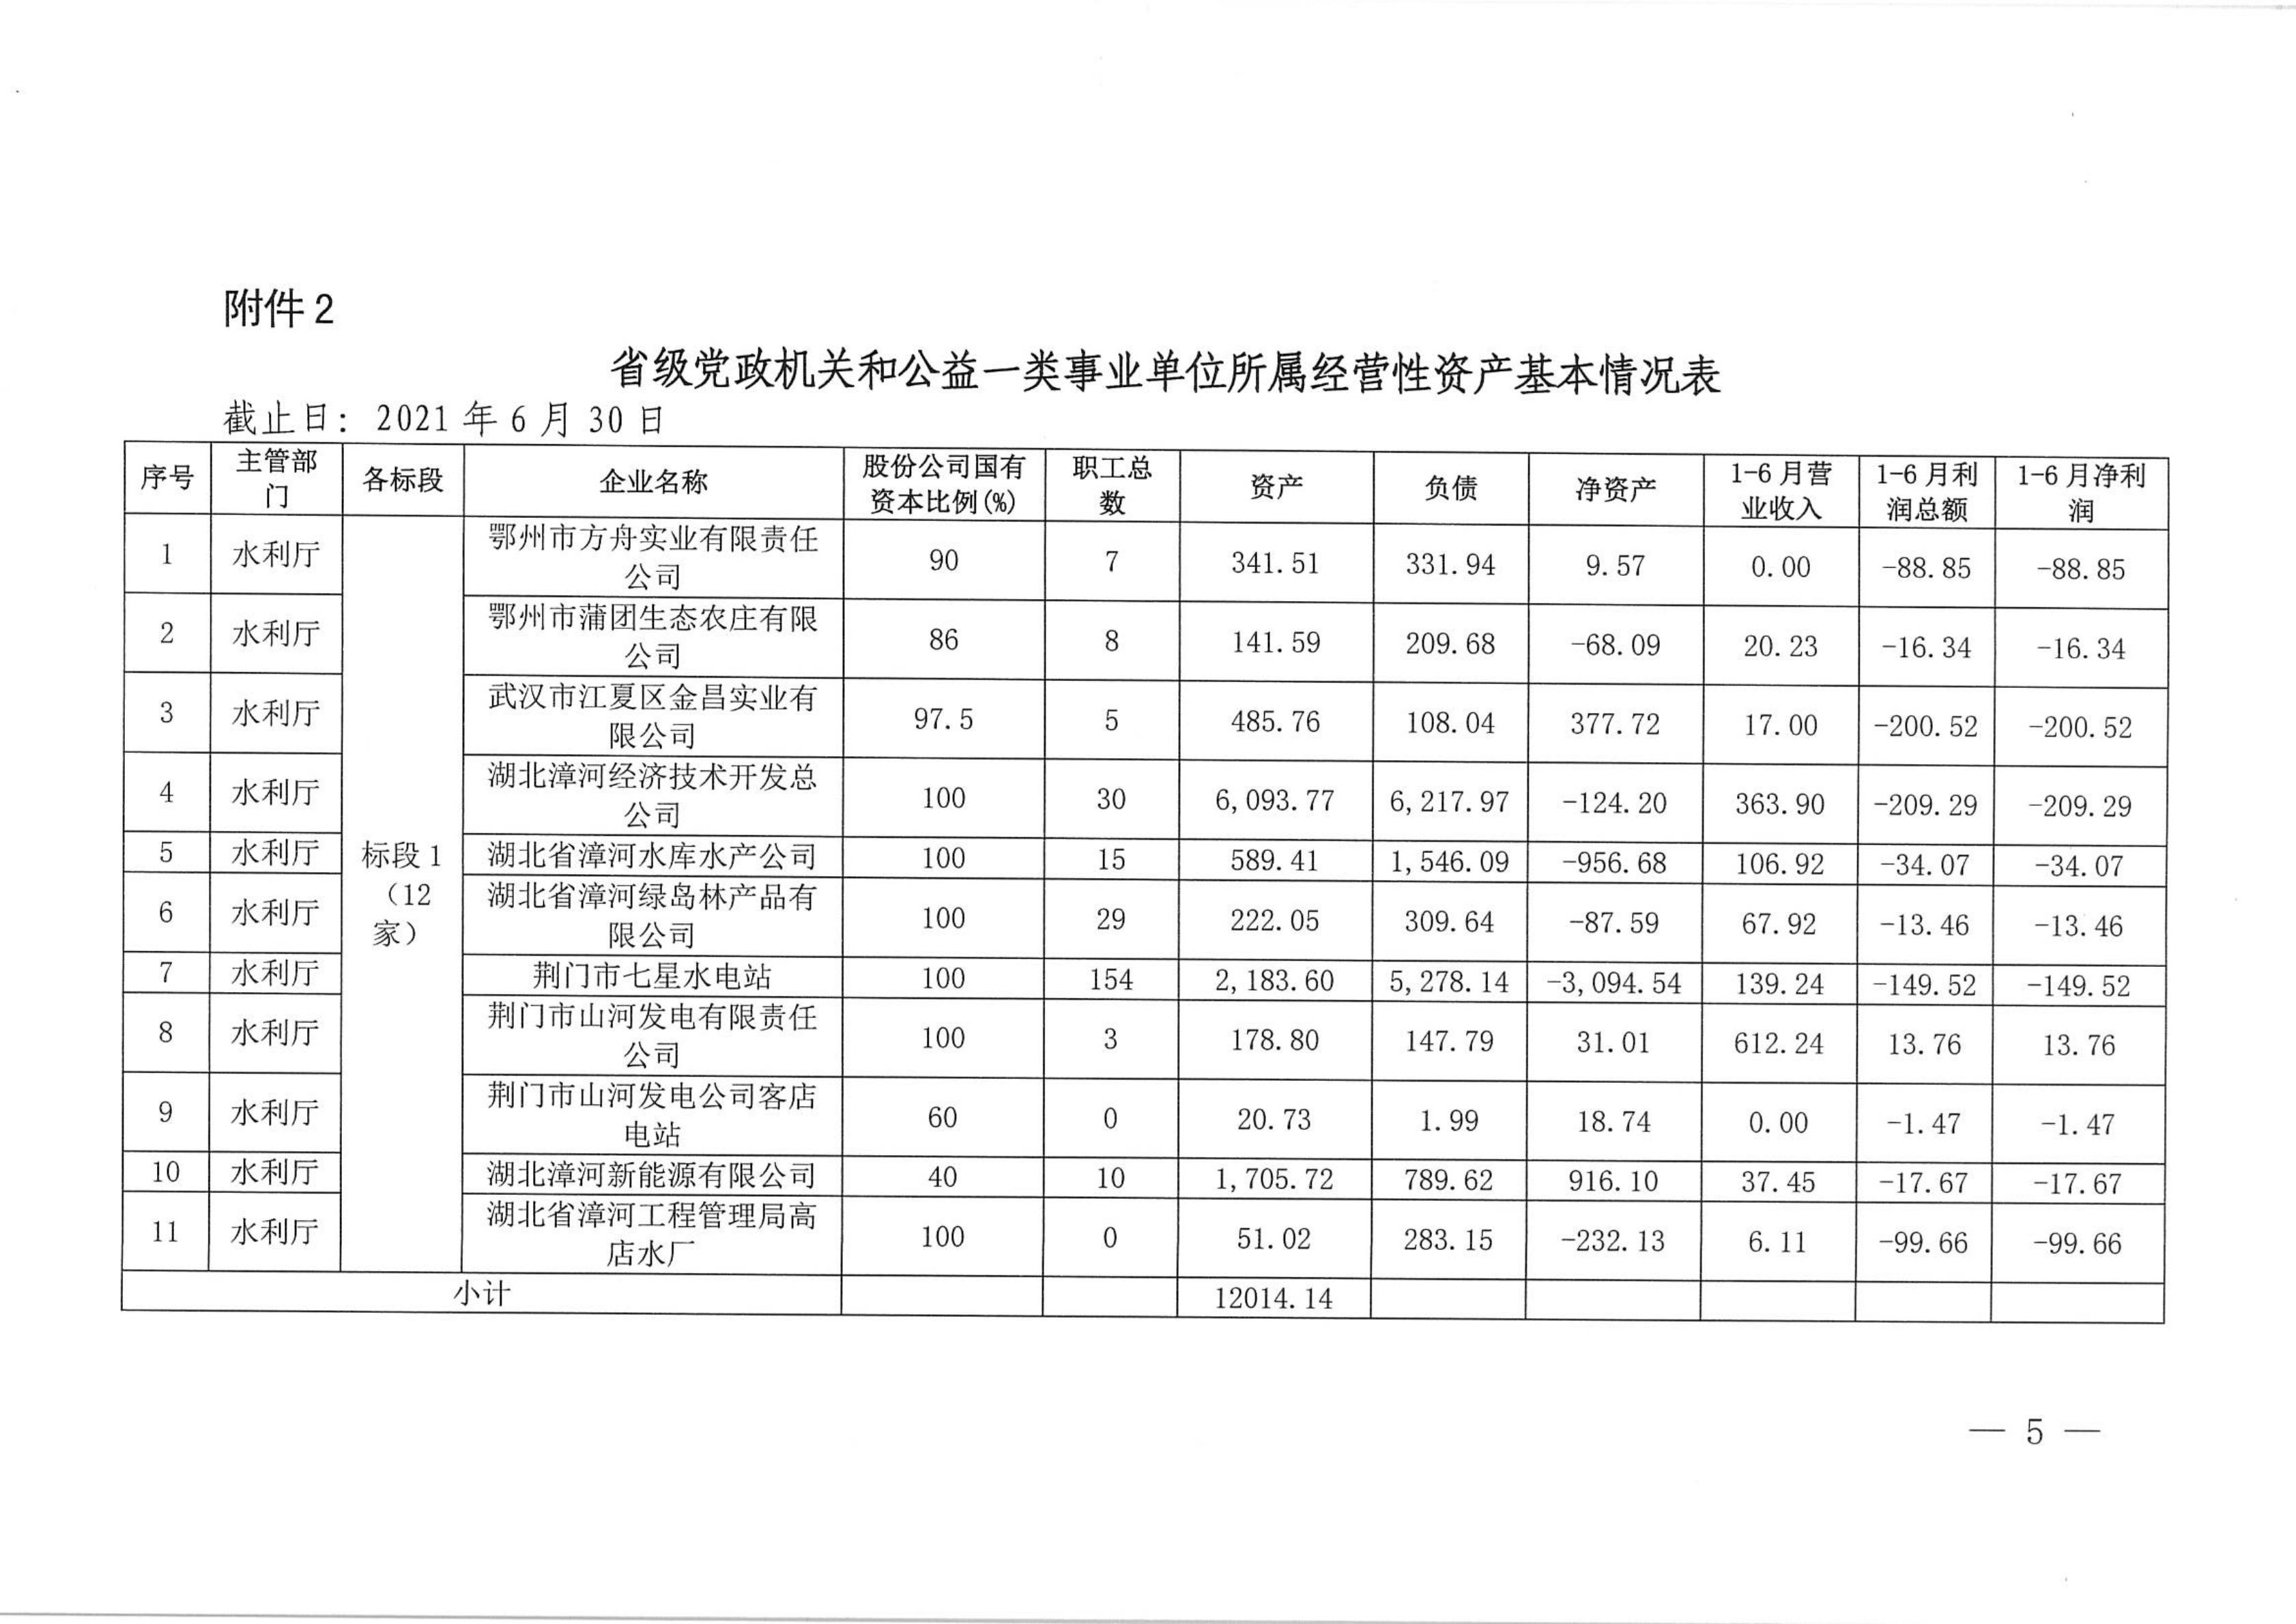 69、长江产业集团清产核资邀标文件(1)  盖章版_04.jpg